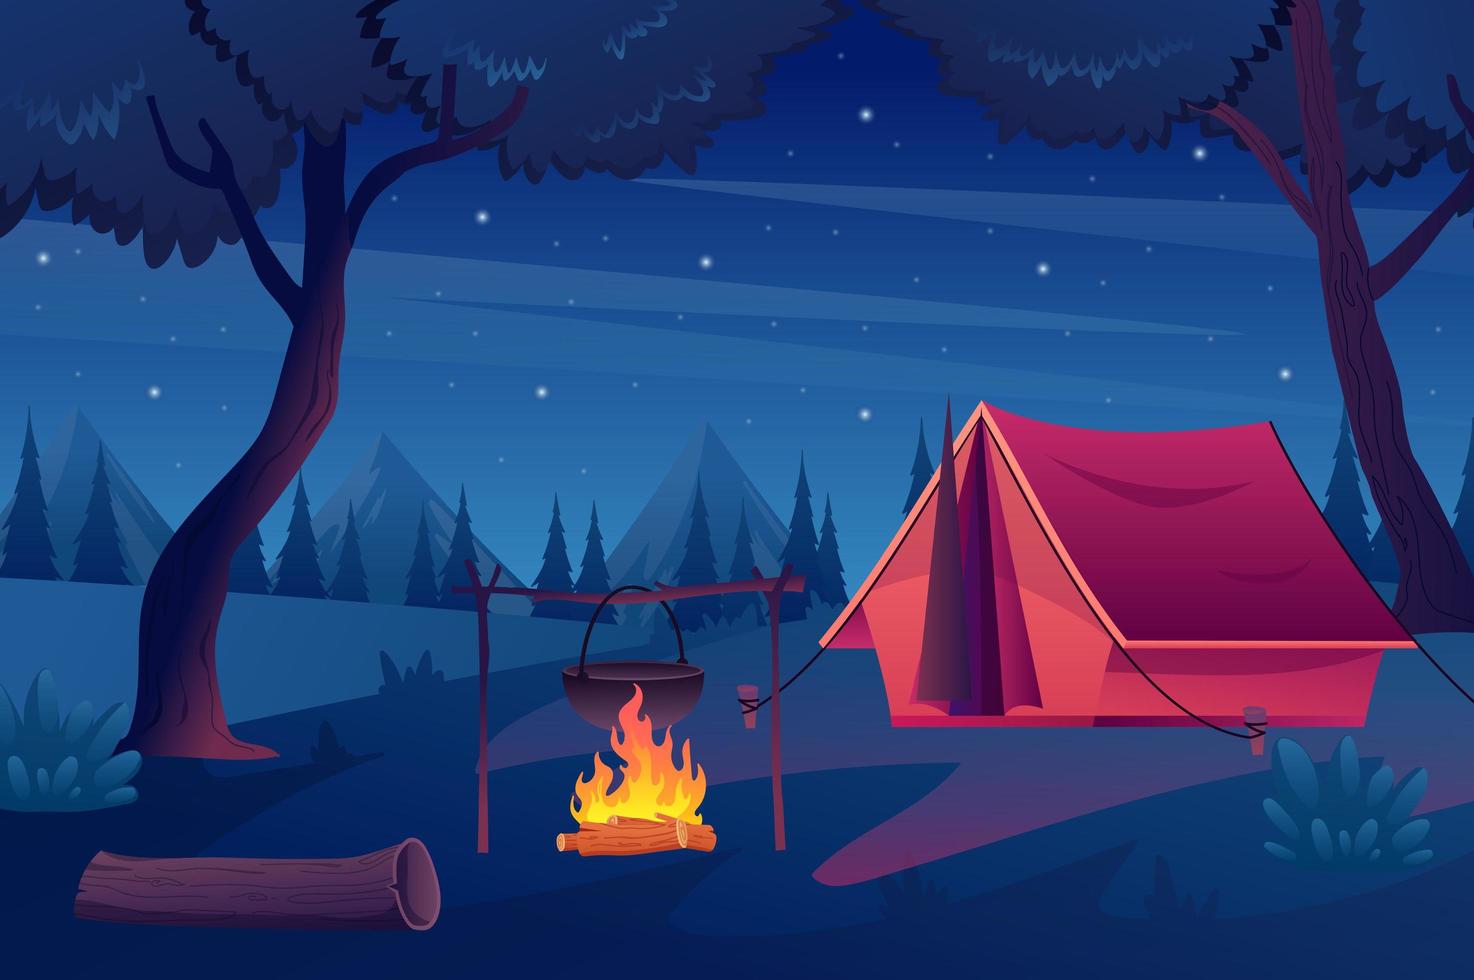 Trekking mit Zelt im Waldkonzept im flachen Cartoon-Design. Nachtszene im Wald, Sternenhimmel, Campingplatz und Kamin, Berge am Horizont. Sommerwandern im Freien. Vektorillustrationshintergrund vektor